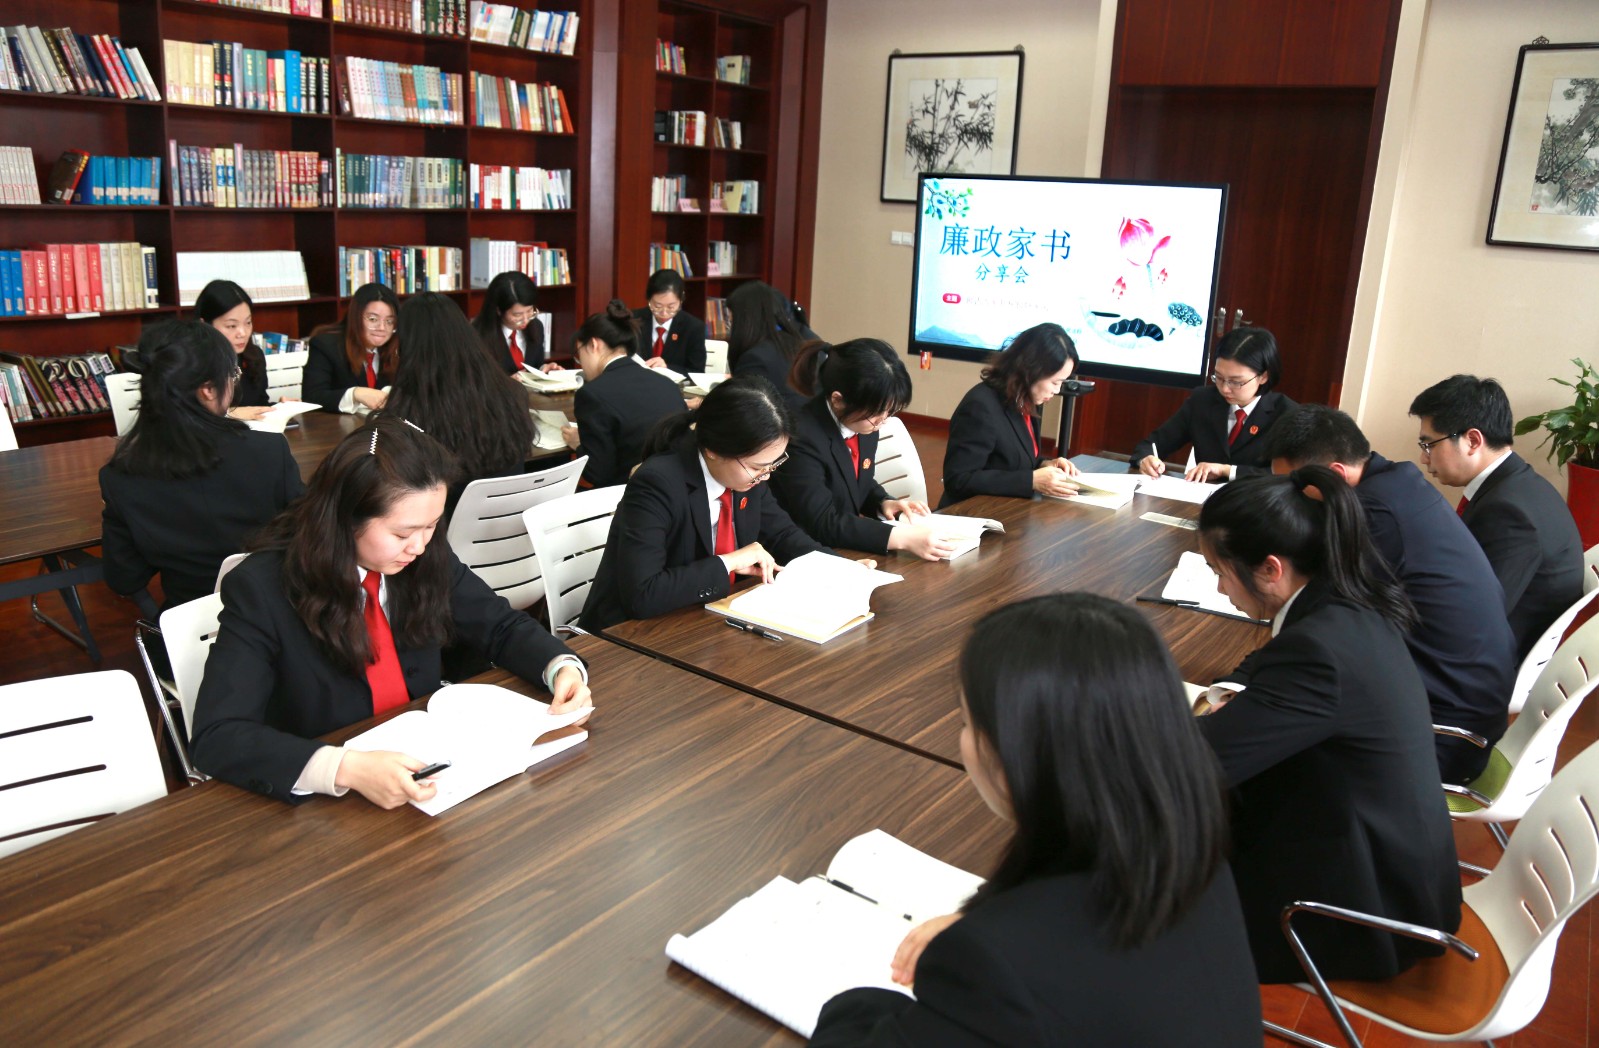 张家港法院举办《廉政家书》读书分享会